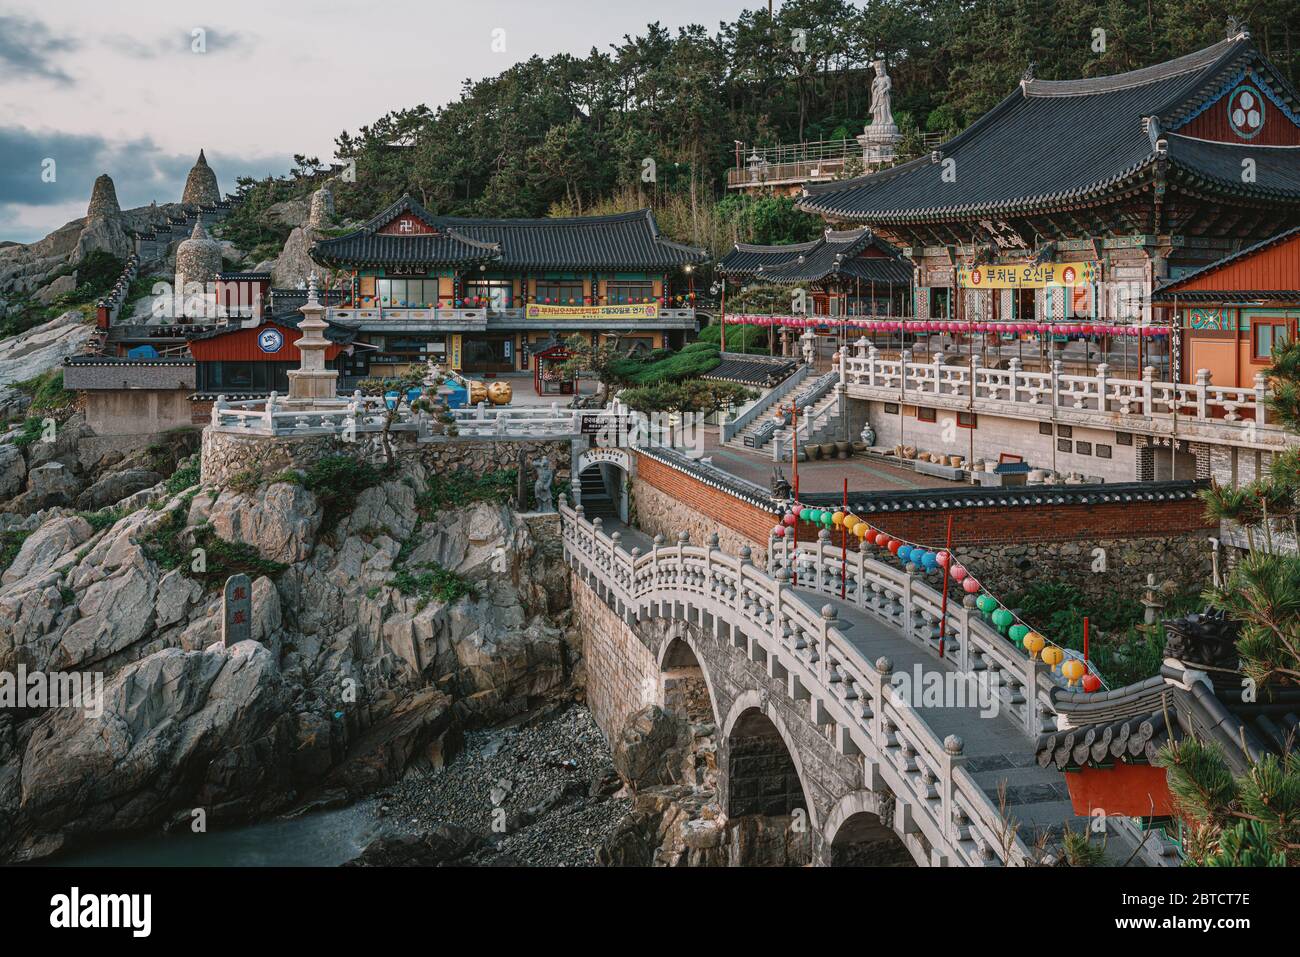 Busan, Corea del Sud - 22 maggio 2020: Haedong Yonggungsa, autopubblicizzato come il tempio più bello della Corea, si trova su una costa rocciosa a nord di Busan. Foto Stock